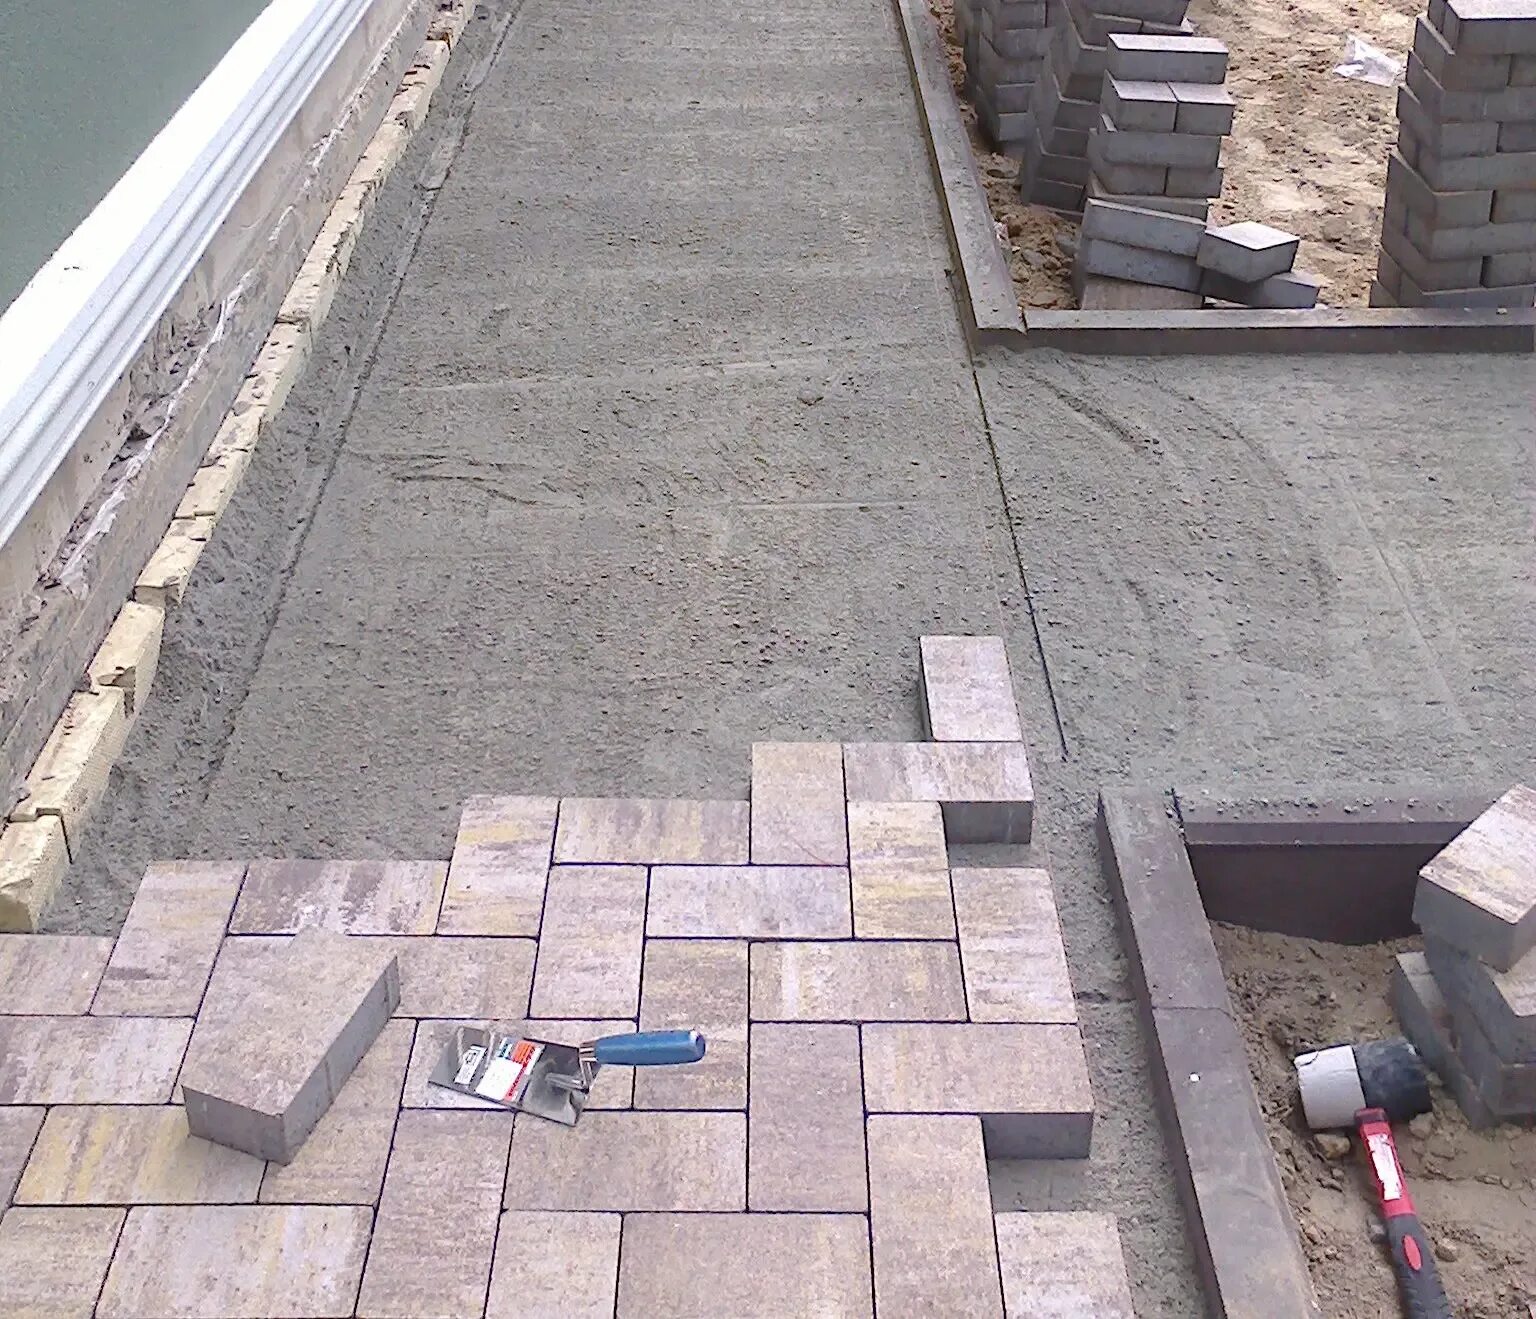 Технология укладки плитка дворе частного дома. Укладка брусчатки на бетонное основание. Тротуарная плитка на бетонное основание. Укладка тротуарной плитки на бетон. Укладка брусчатки нпбетон.